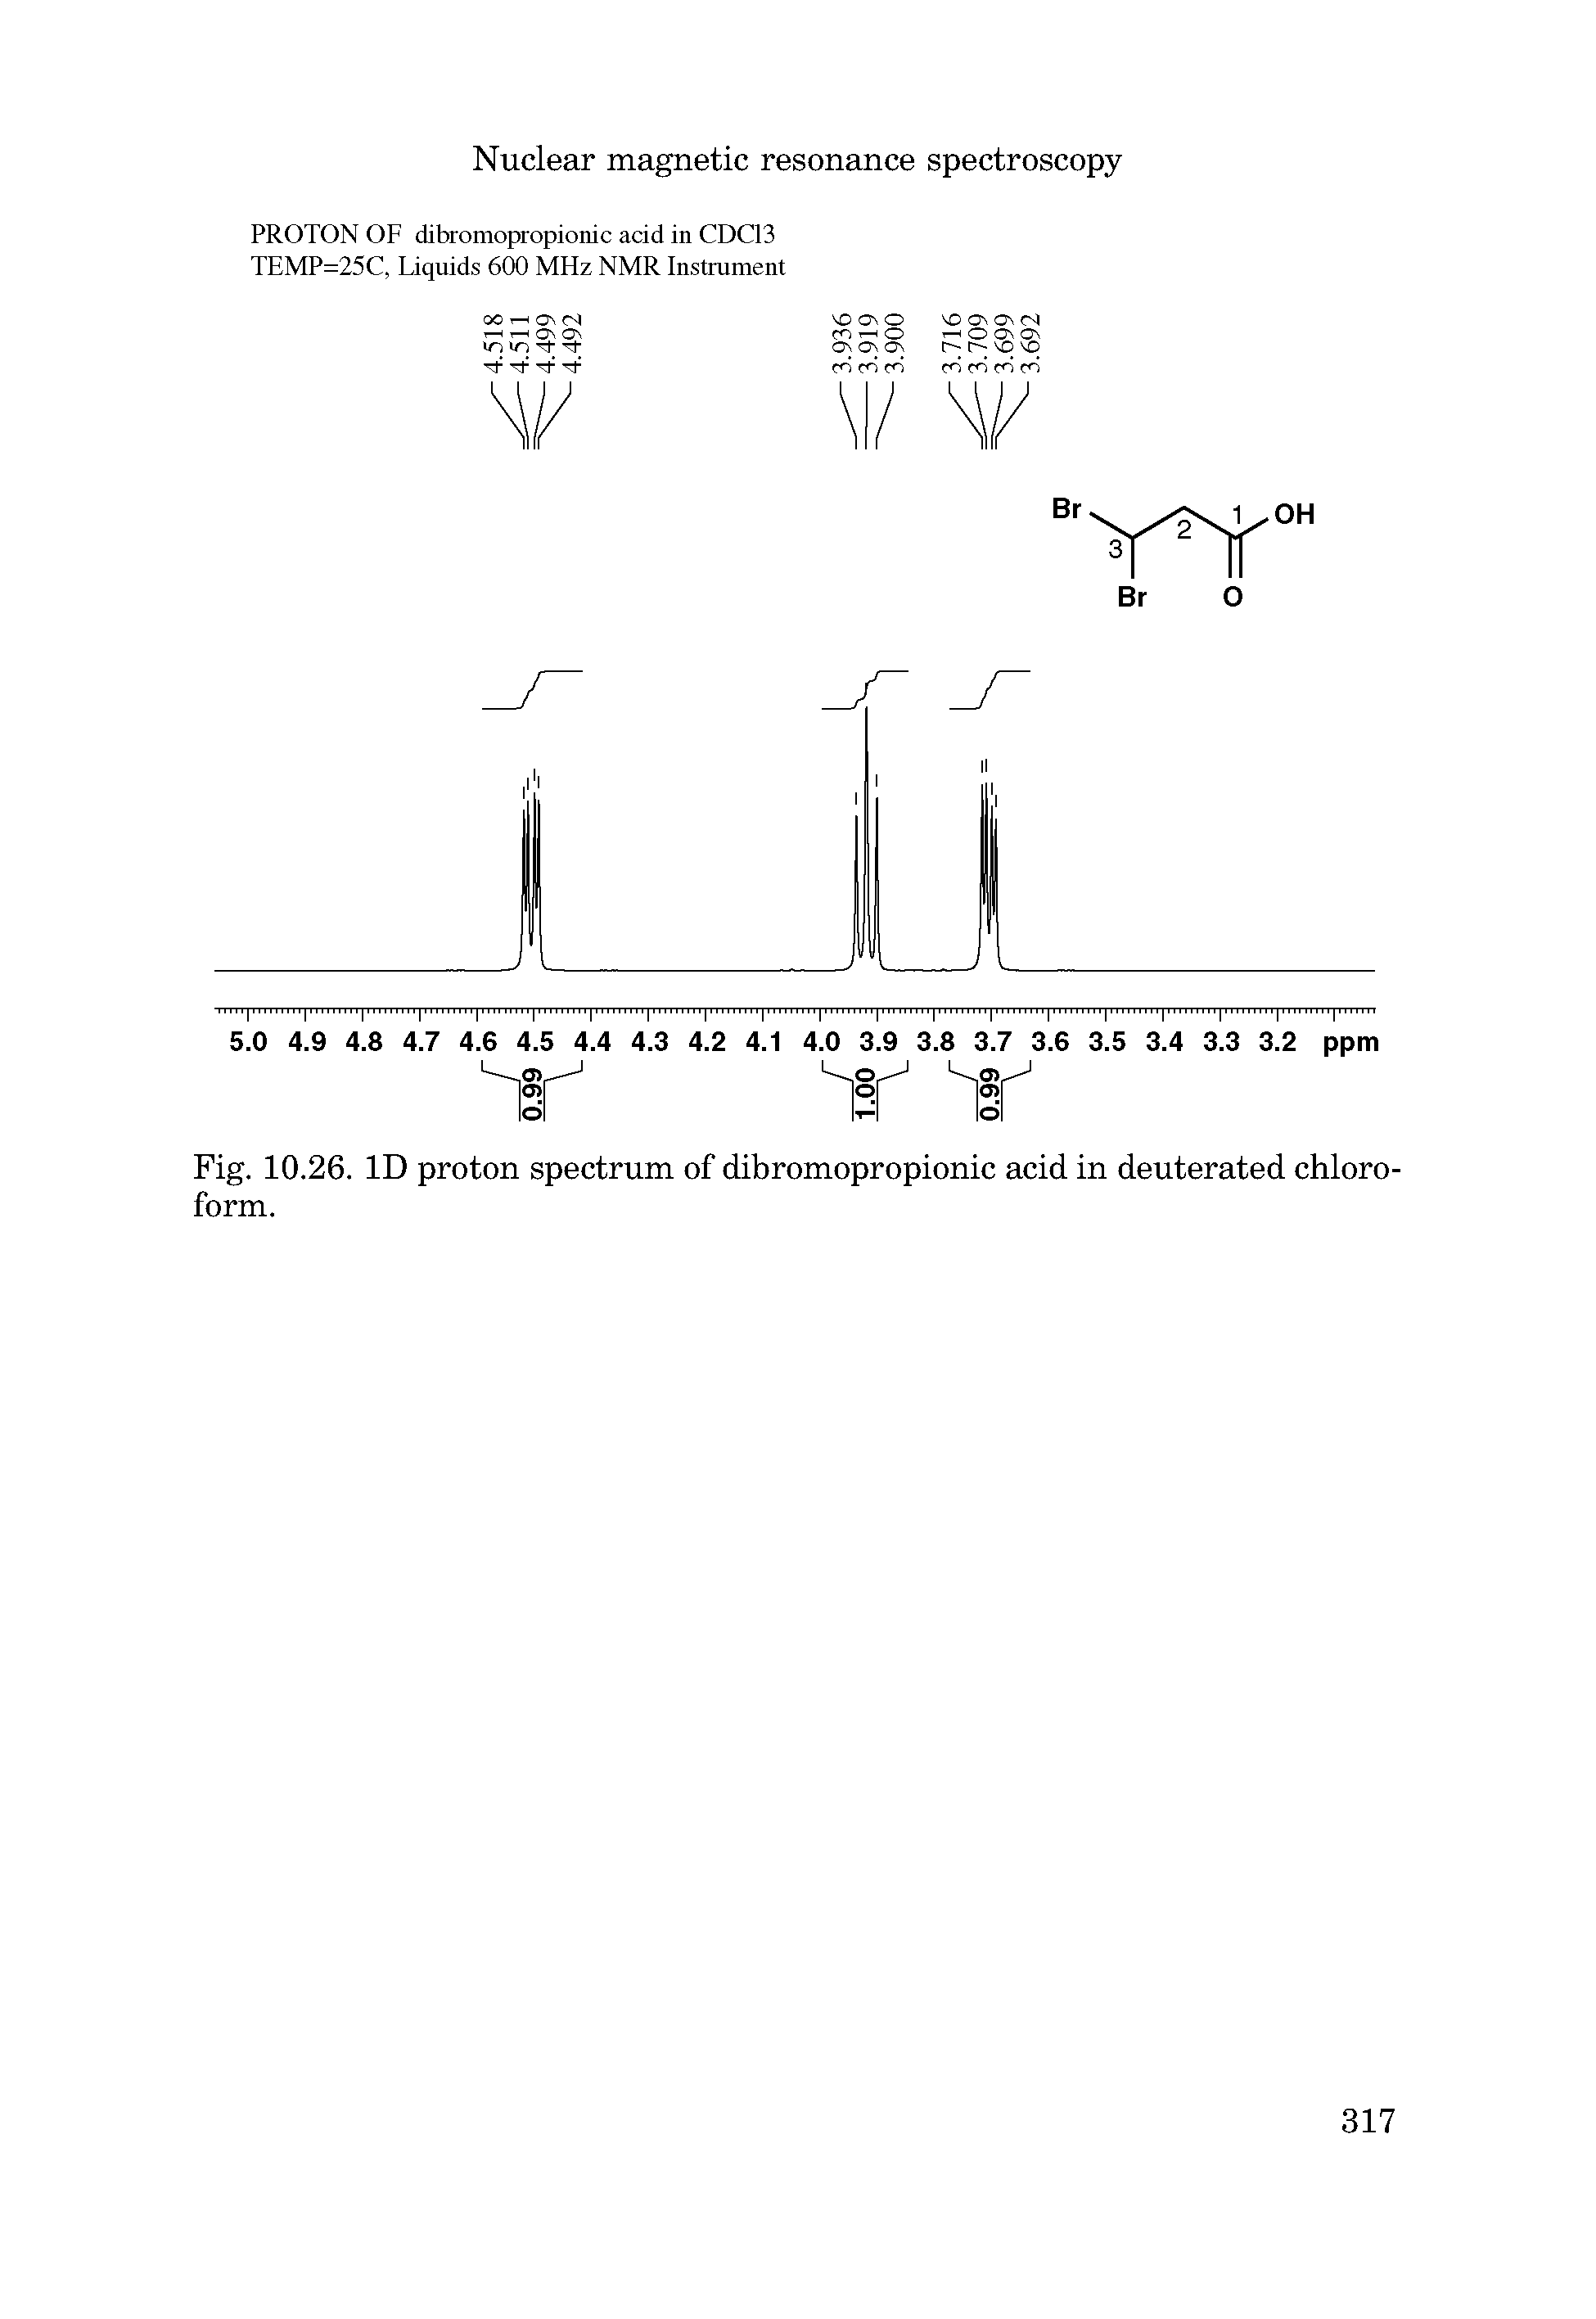 Fig. 10.26. ID proton spectrum of dibromopropionic acid in deuterated chloroform.